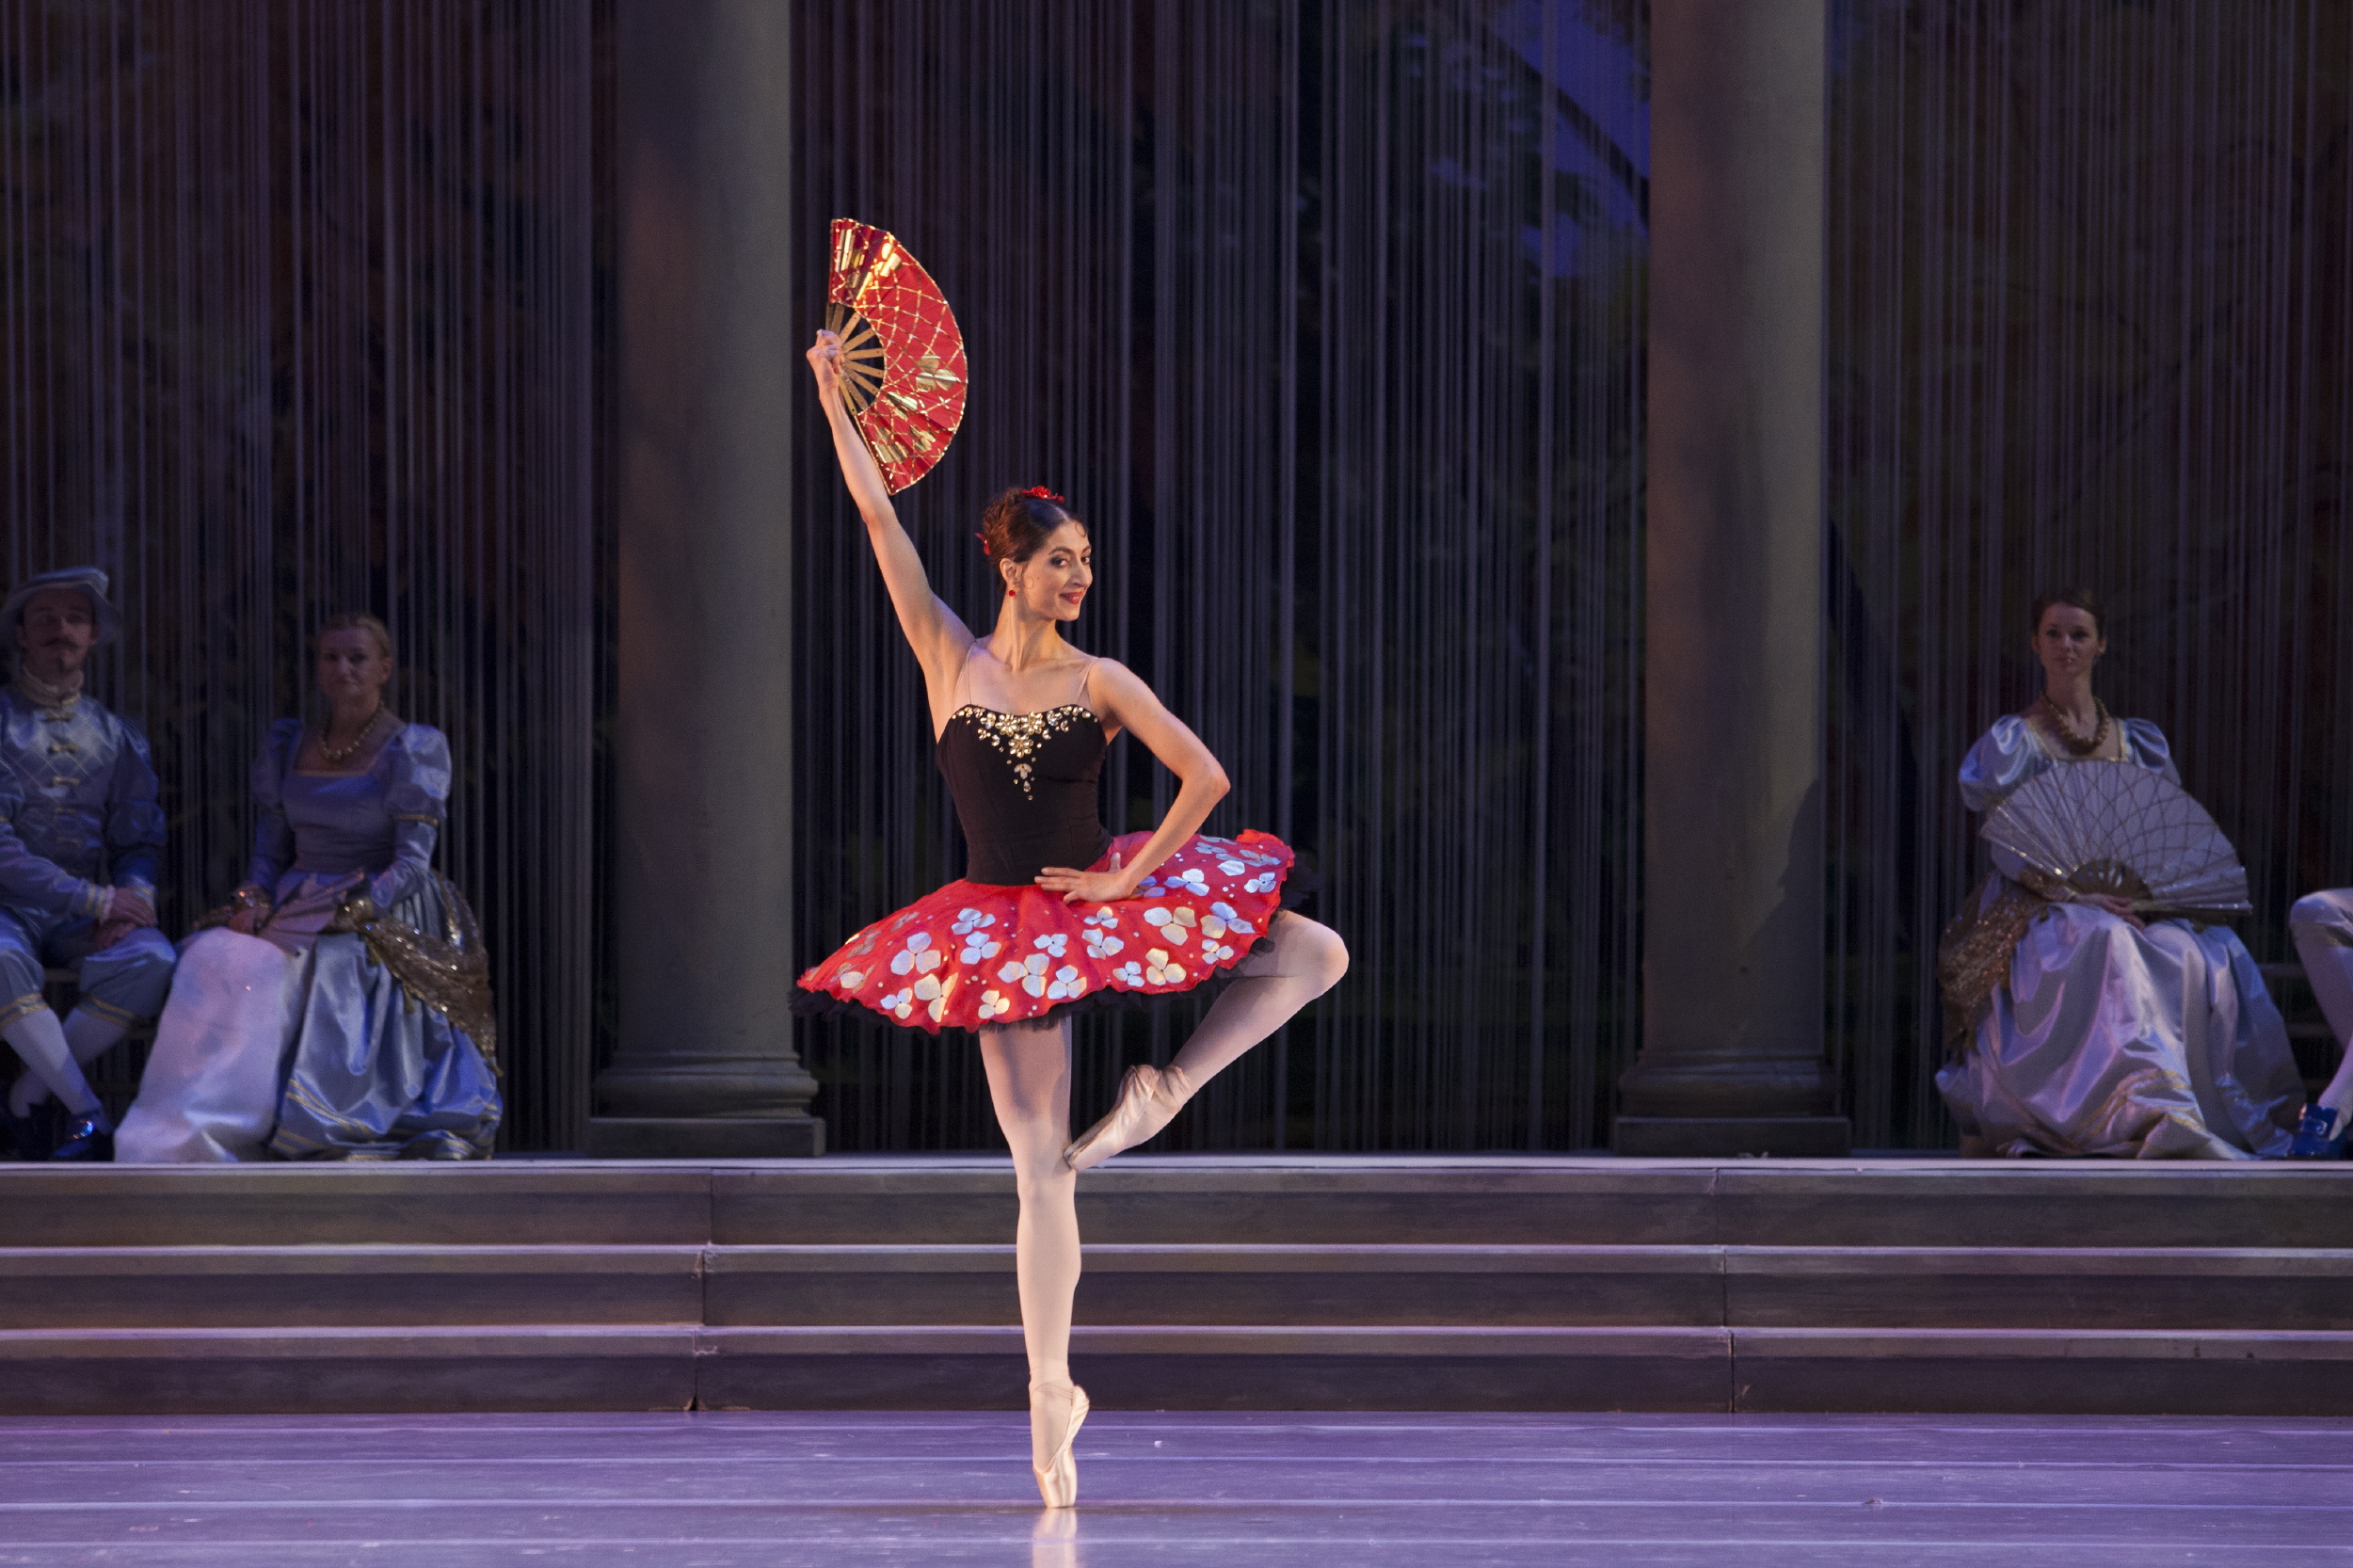 Solistka Chinara Alizade na scenie w kostiumie hiszpańskim, z wahlarzem w uniesionej dłoni.